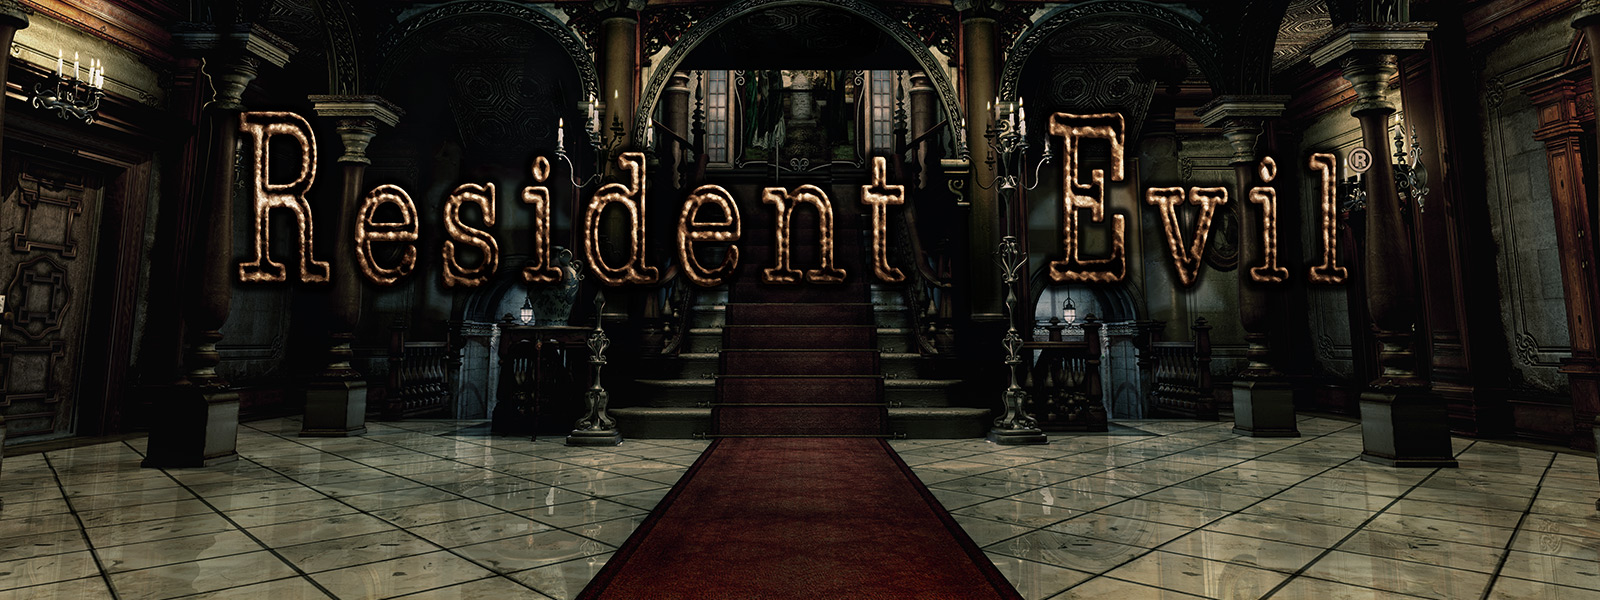 Resident Evil, kırmızı halılı merdivenlerin olduğu büyük kemerli bir girişin görüntüsü